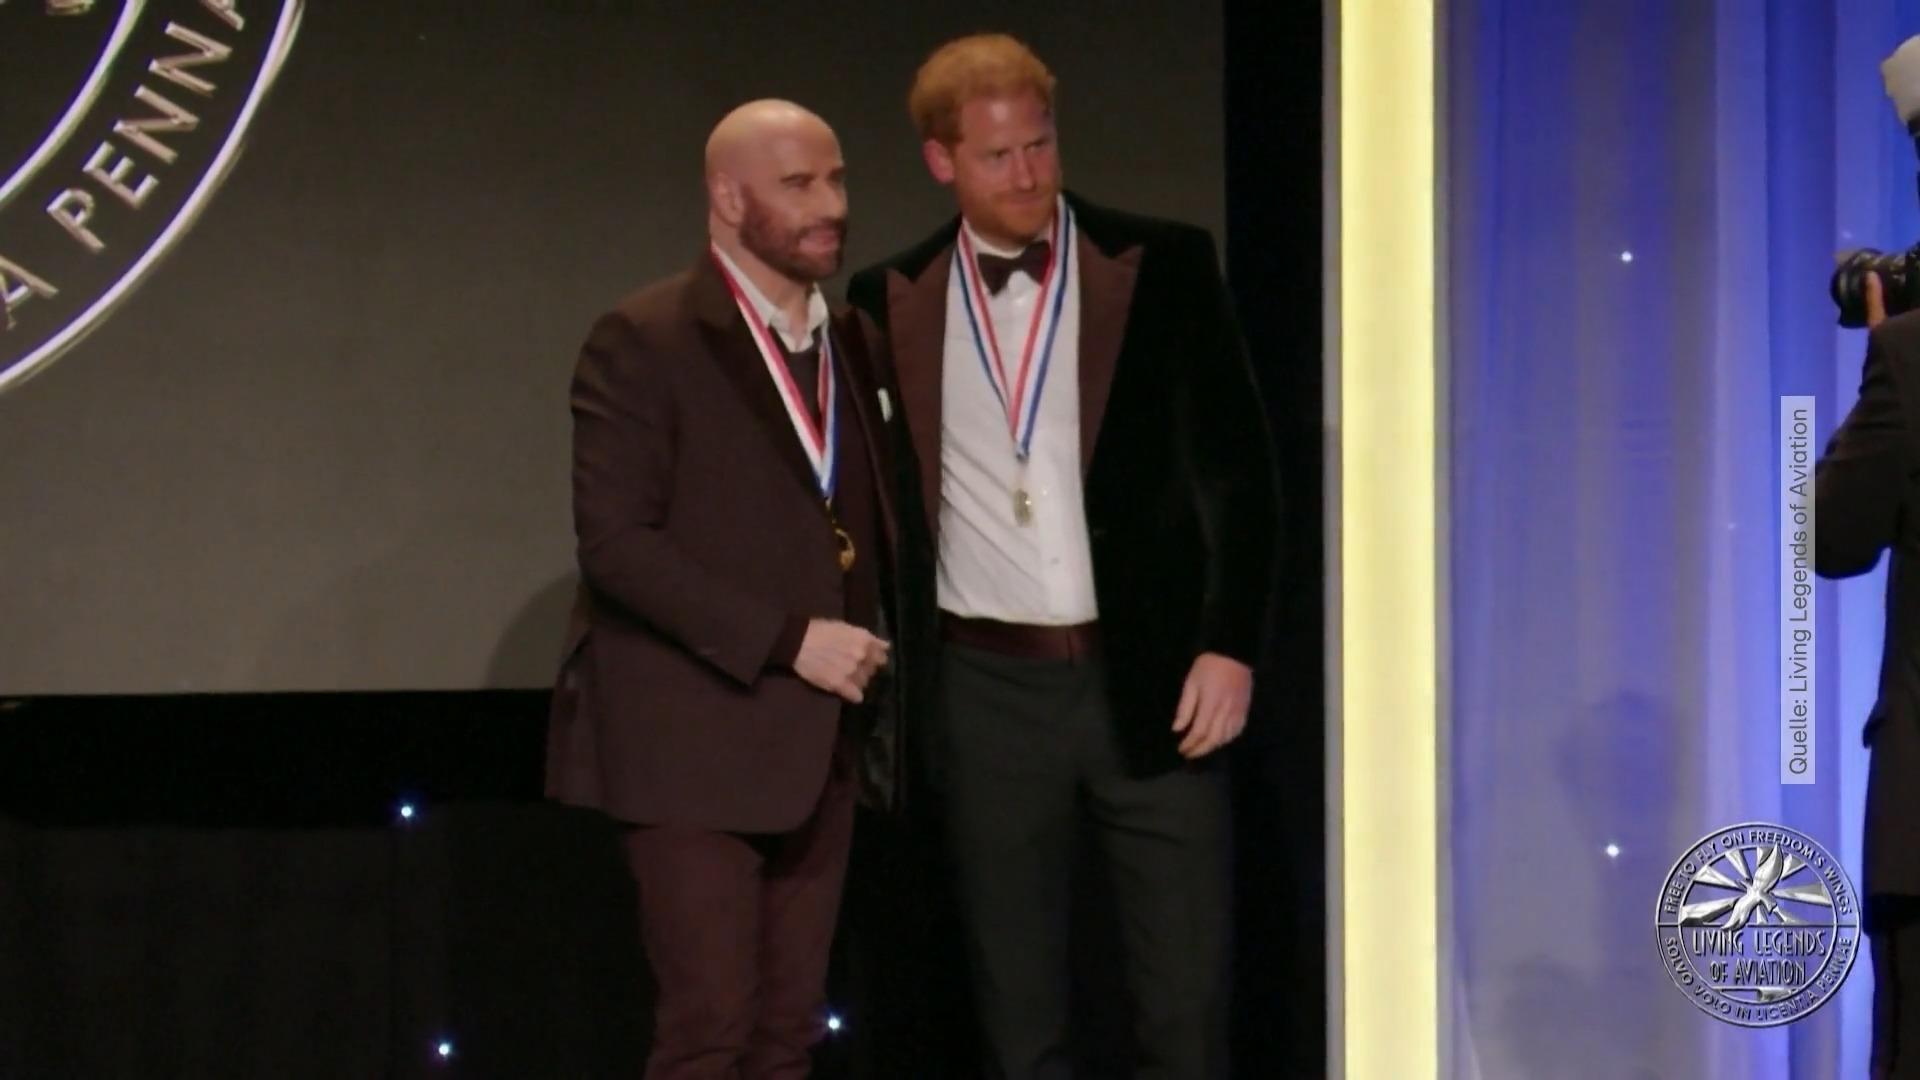 El príncipe Harry recibió este premio de manos de John Travolta como destinatario.